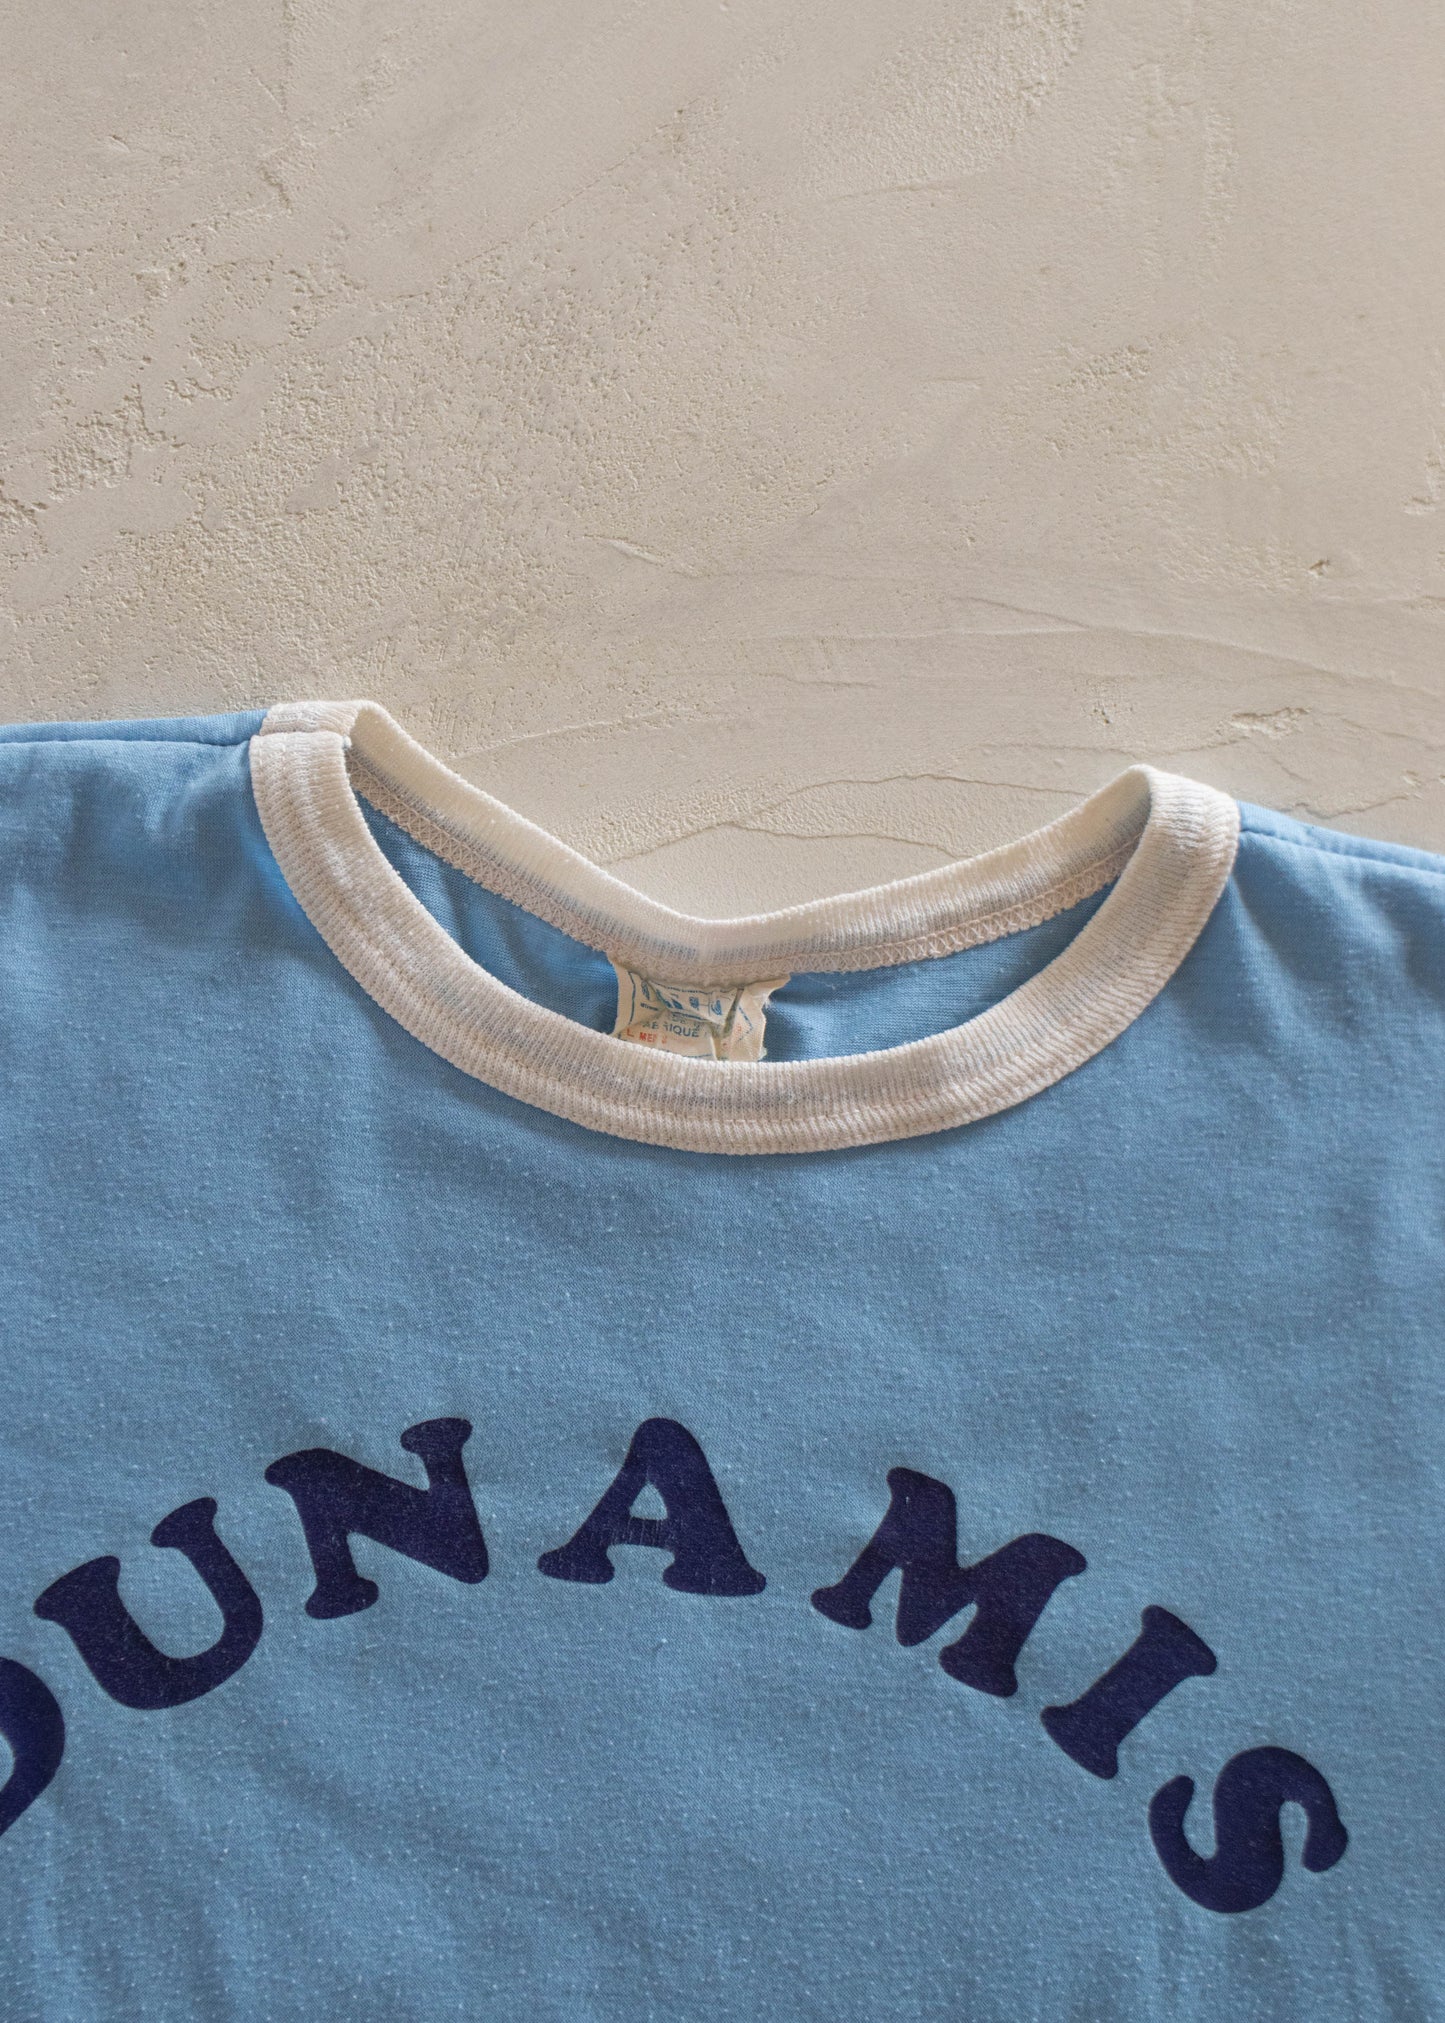 1980s Calhoun Dunamis Sport T-Shirt Size M/L